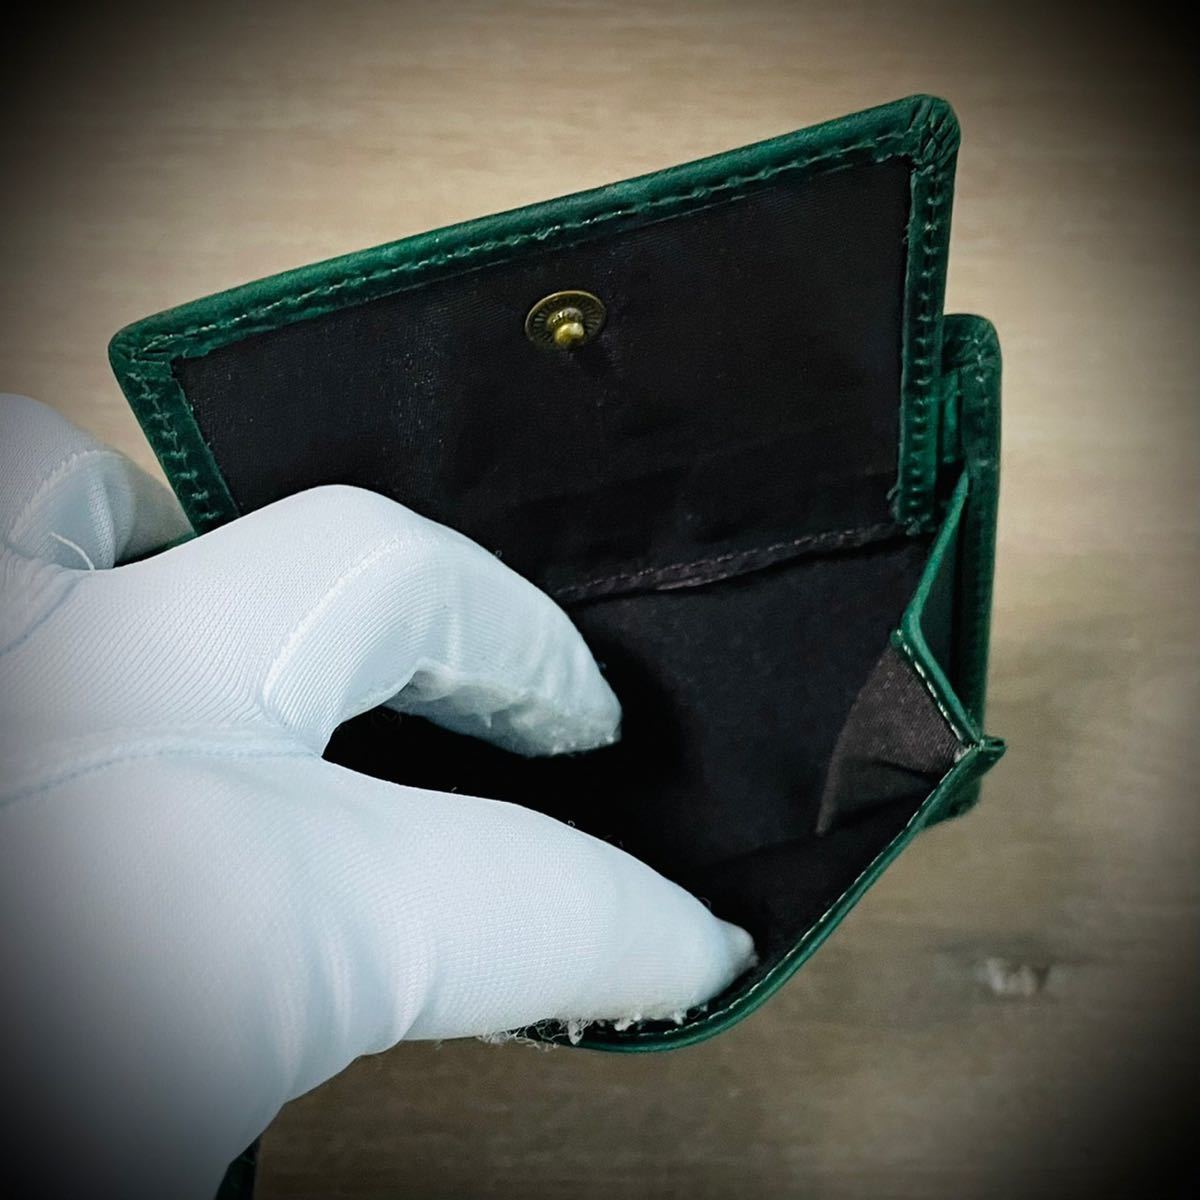 イタリアンレザー 折財布 二つ折り 本革 ヌバック メンズ 牛革 経年変化 ハンドメイド コンパクト 送料無料 グリーン